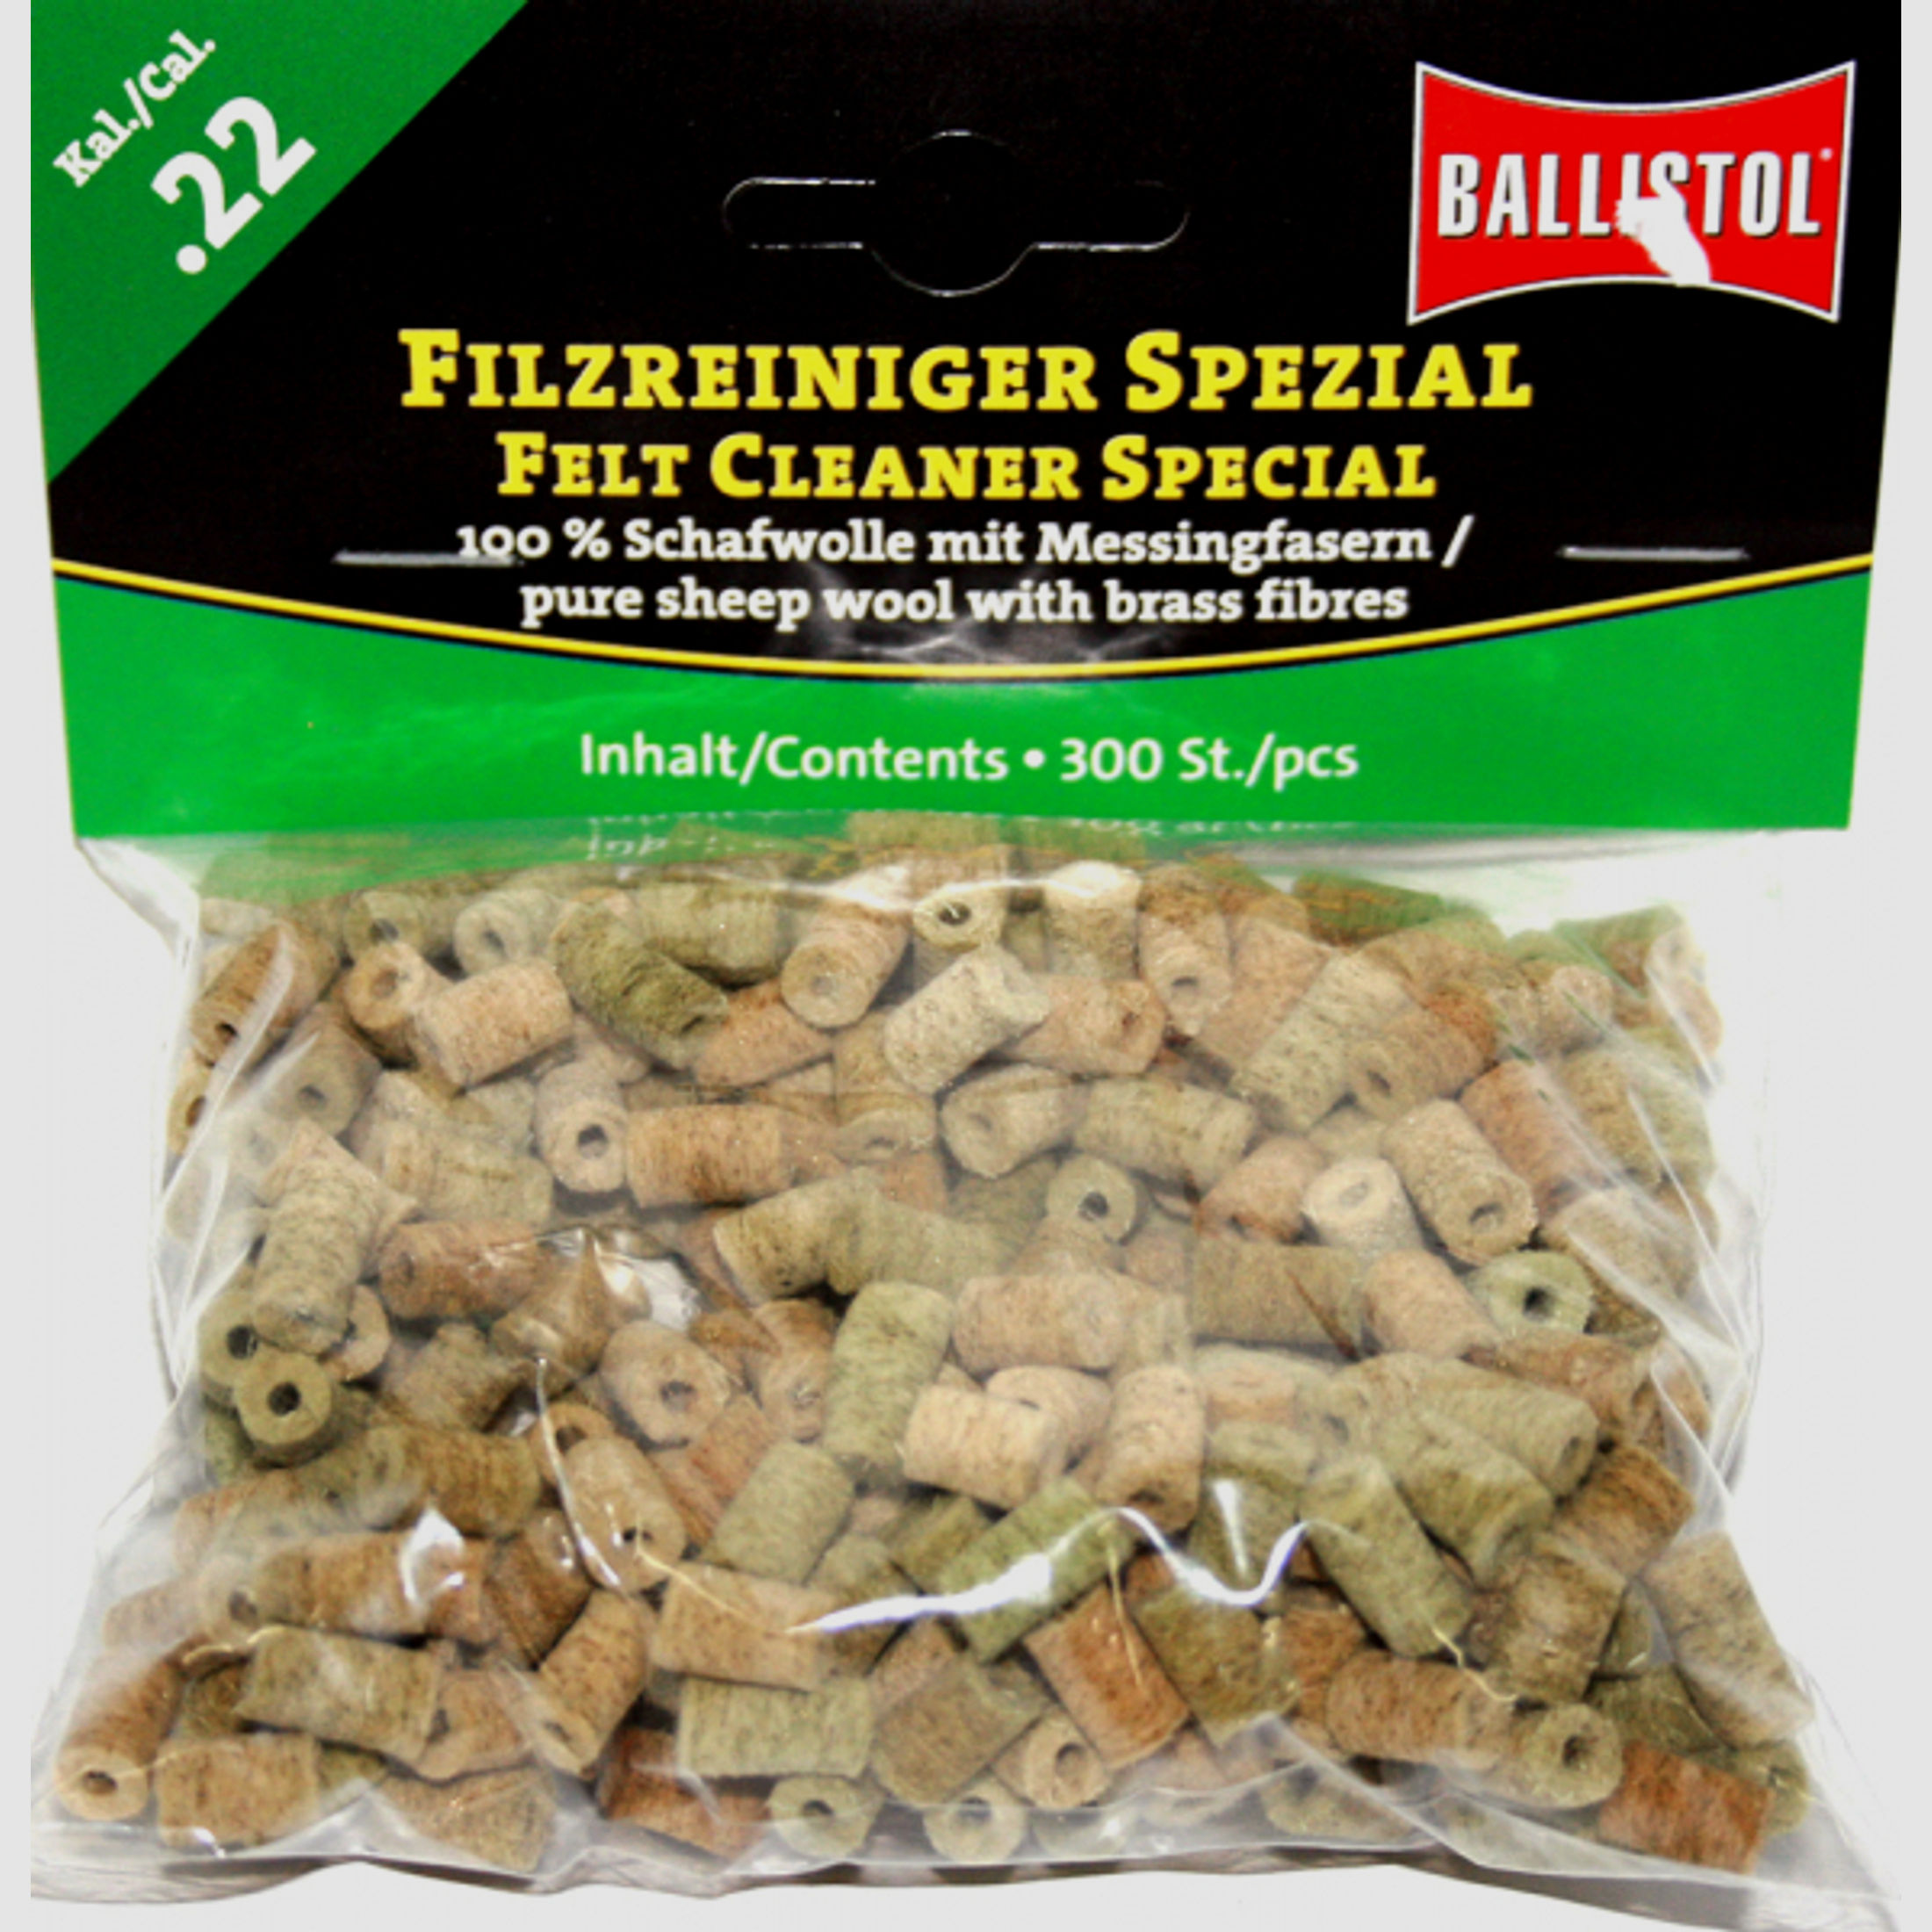 300x BALLISTOL Reinigungsfilze/Filzreiniger SPEZIAL Cal.22 | Schafwolle mit Messingfasern! 5,6mm 223